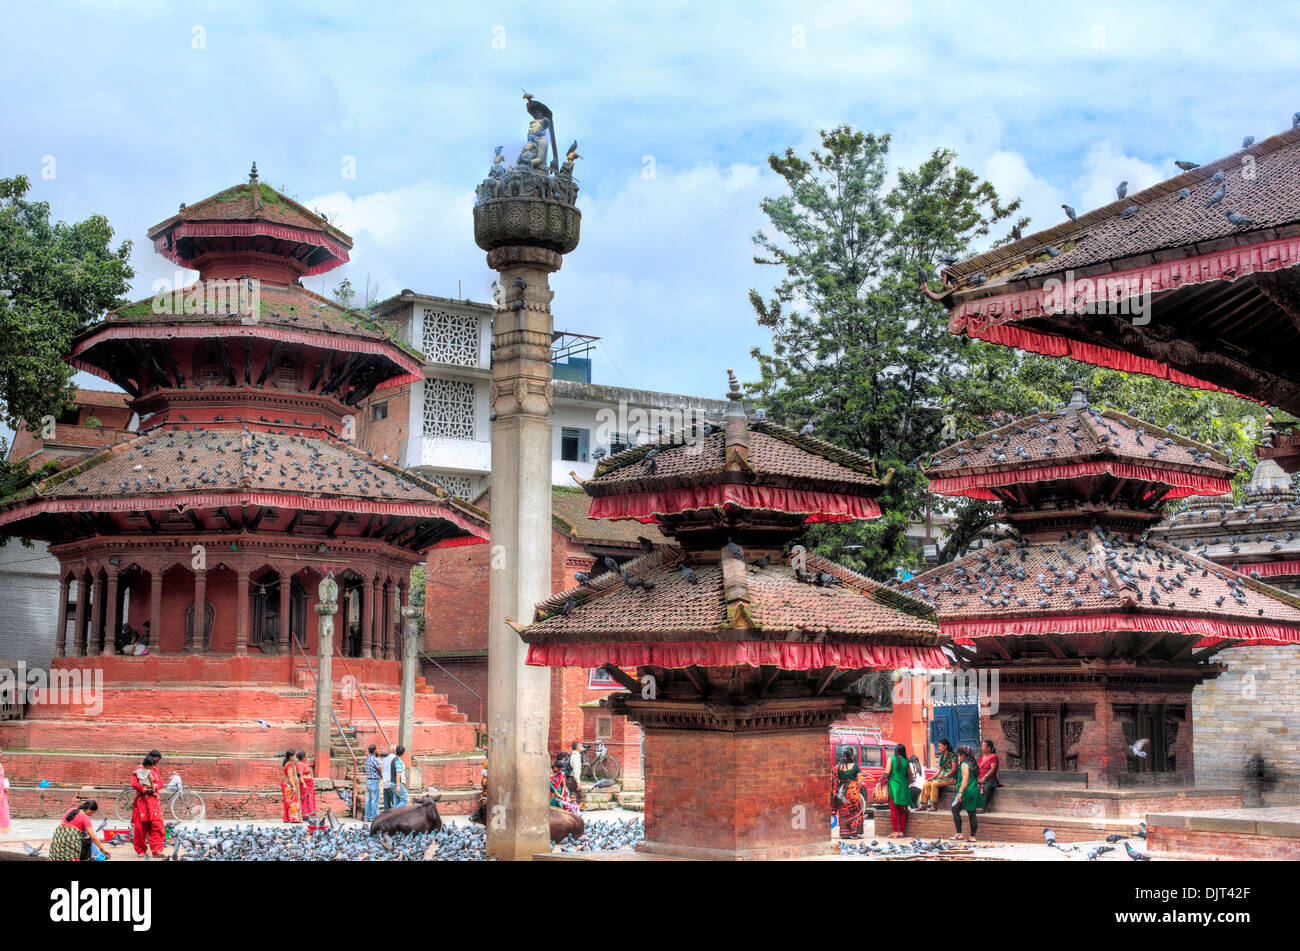 Krishna temple, Durbar square, Kathmandu, Nepal Stock Photo